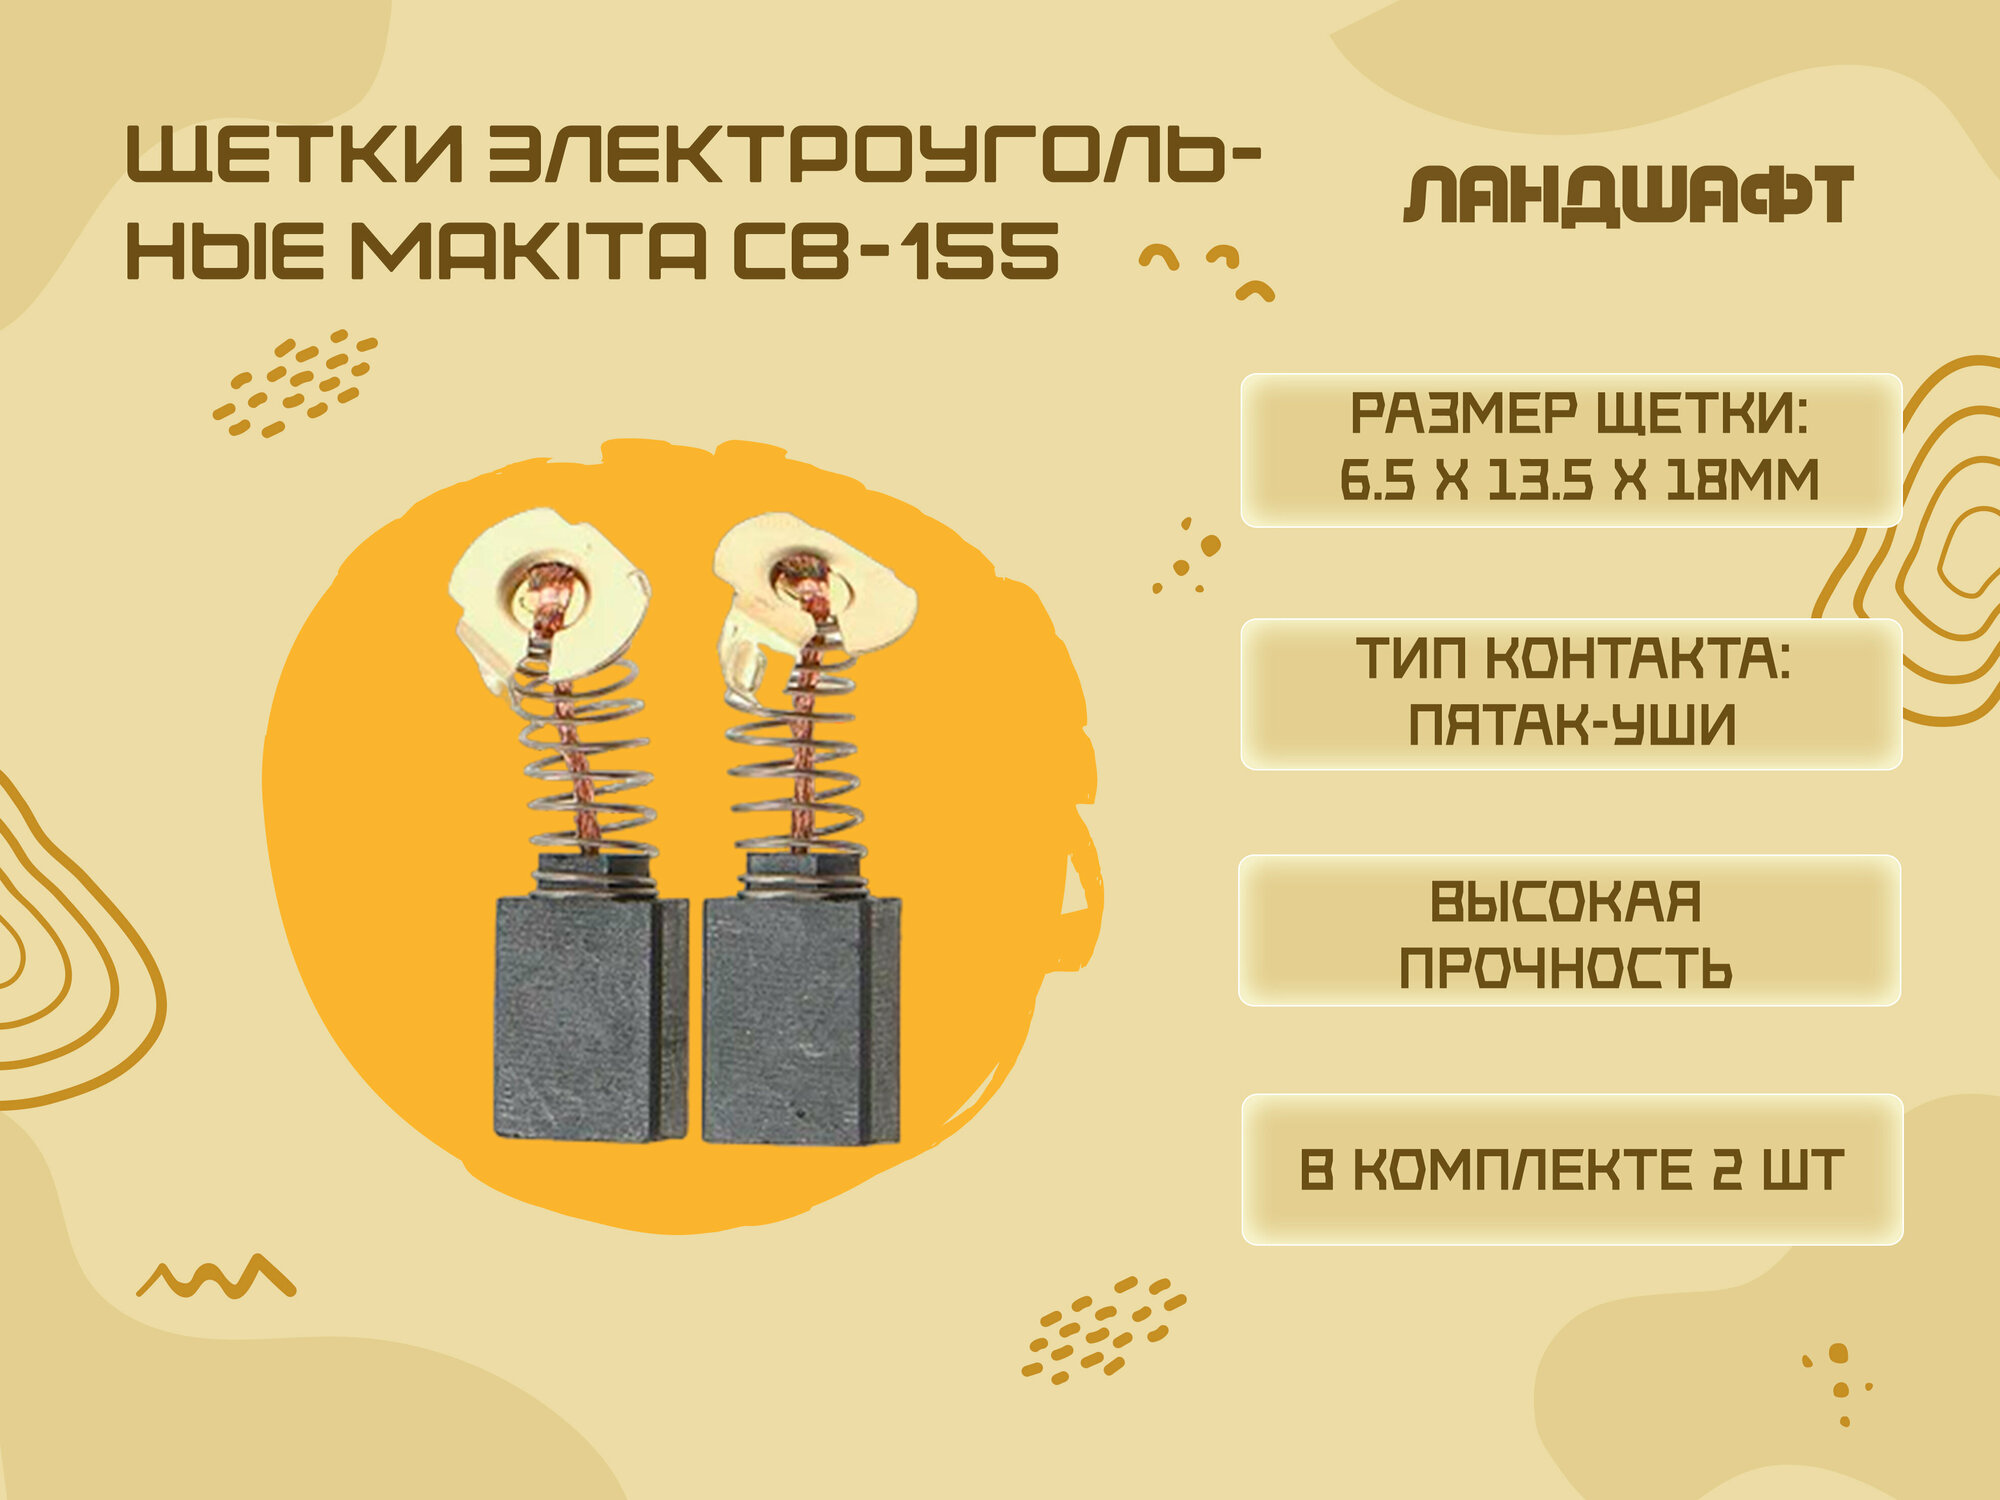 Щетки электроугольные MAKITA CB-155 (6.5*13.5*18мм)